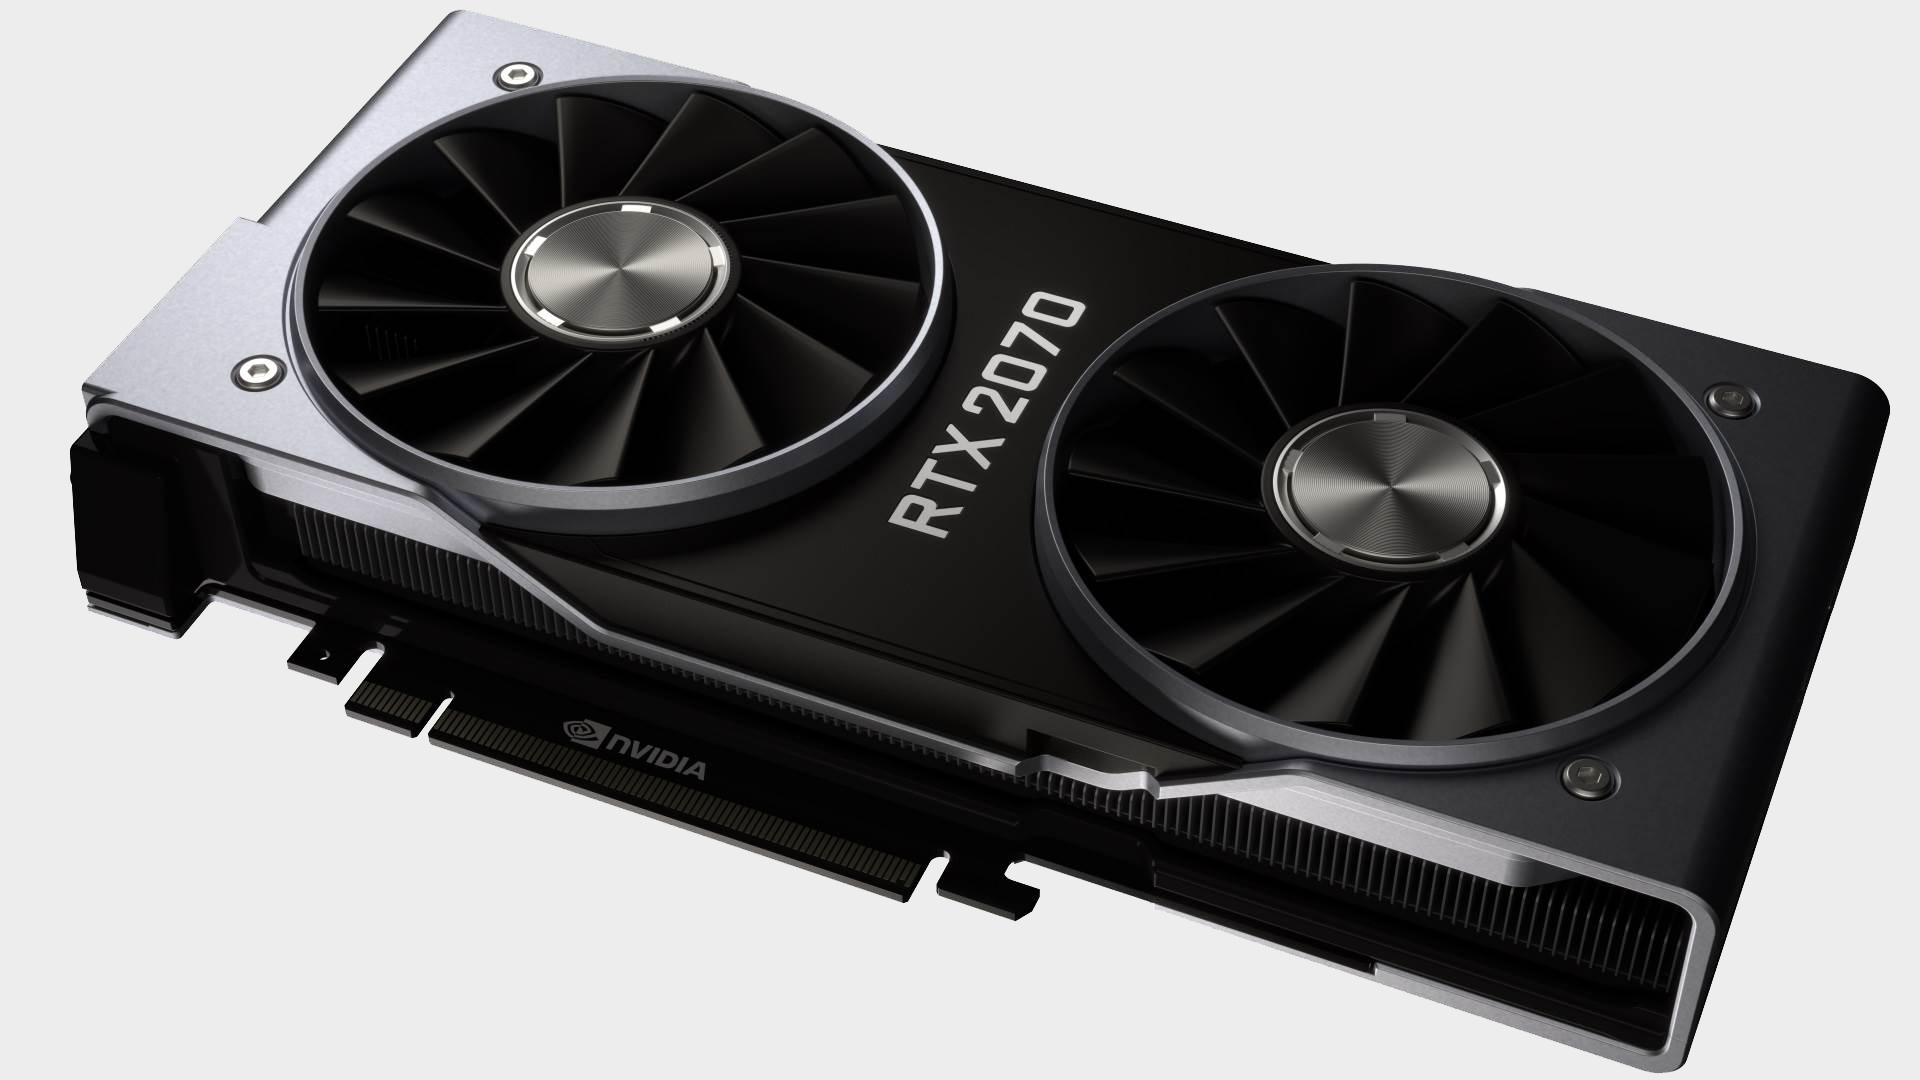 Præfiks sundhed kaste støv i øjnene Best Nvidia GeForce RTX 2070 deals of 2019 | PC Gamer